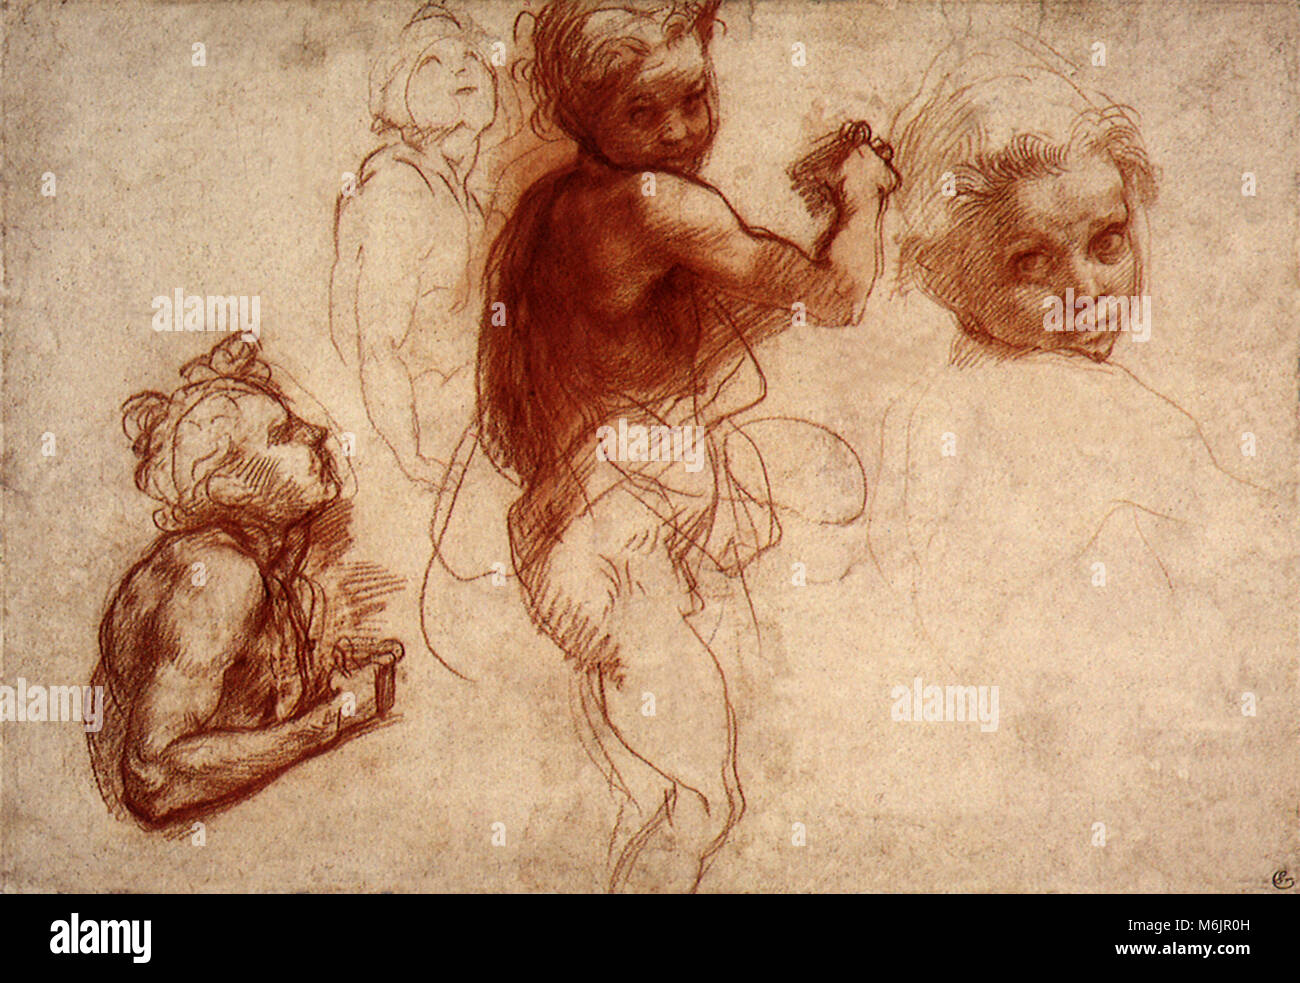 Cuatro estudios de un niño, Andrea del Sarto, 1520. Foto de stock